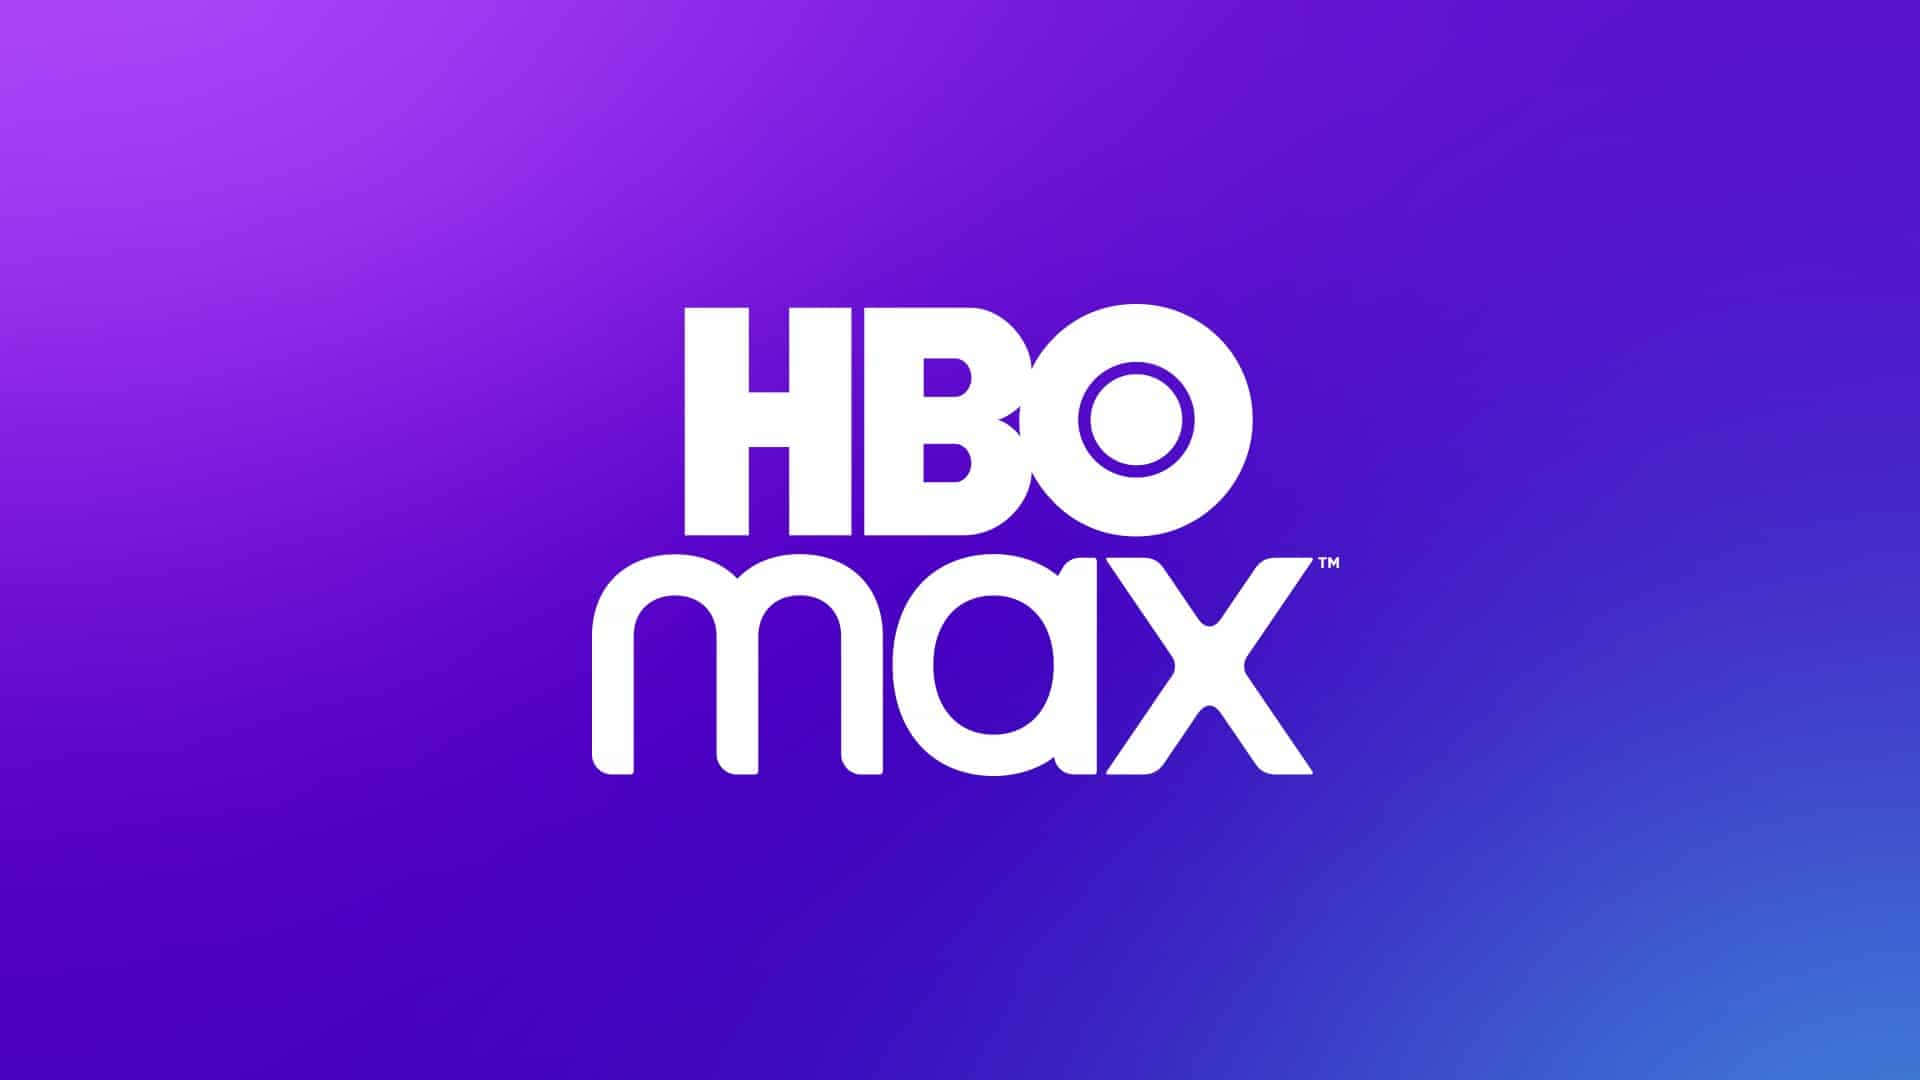 Logotipoda Hbo Max Em Um Fundo Roxo.